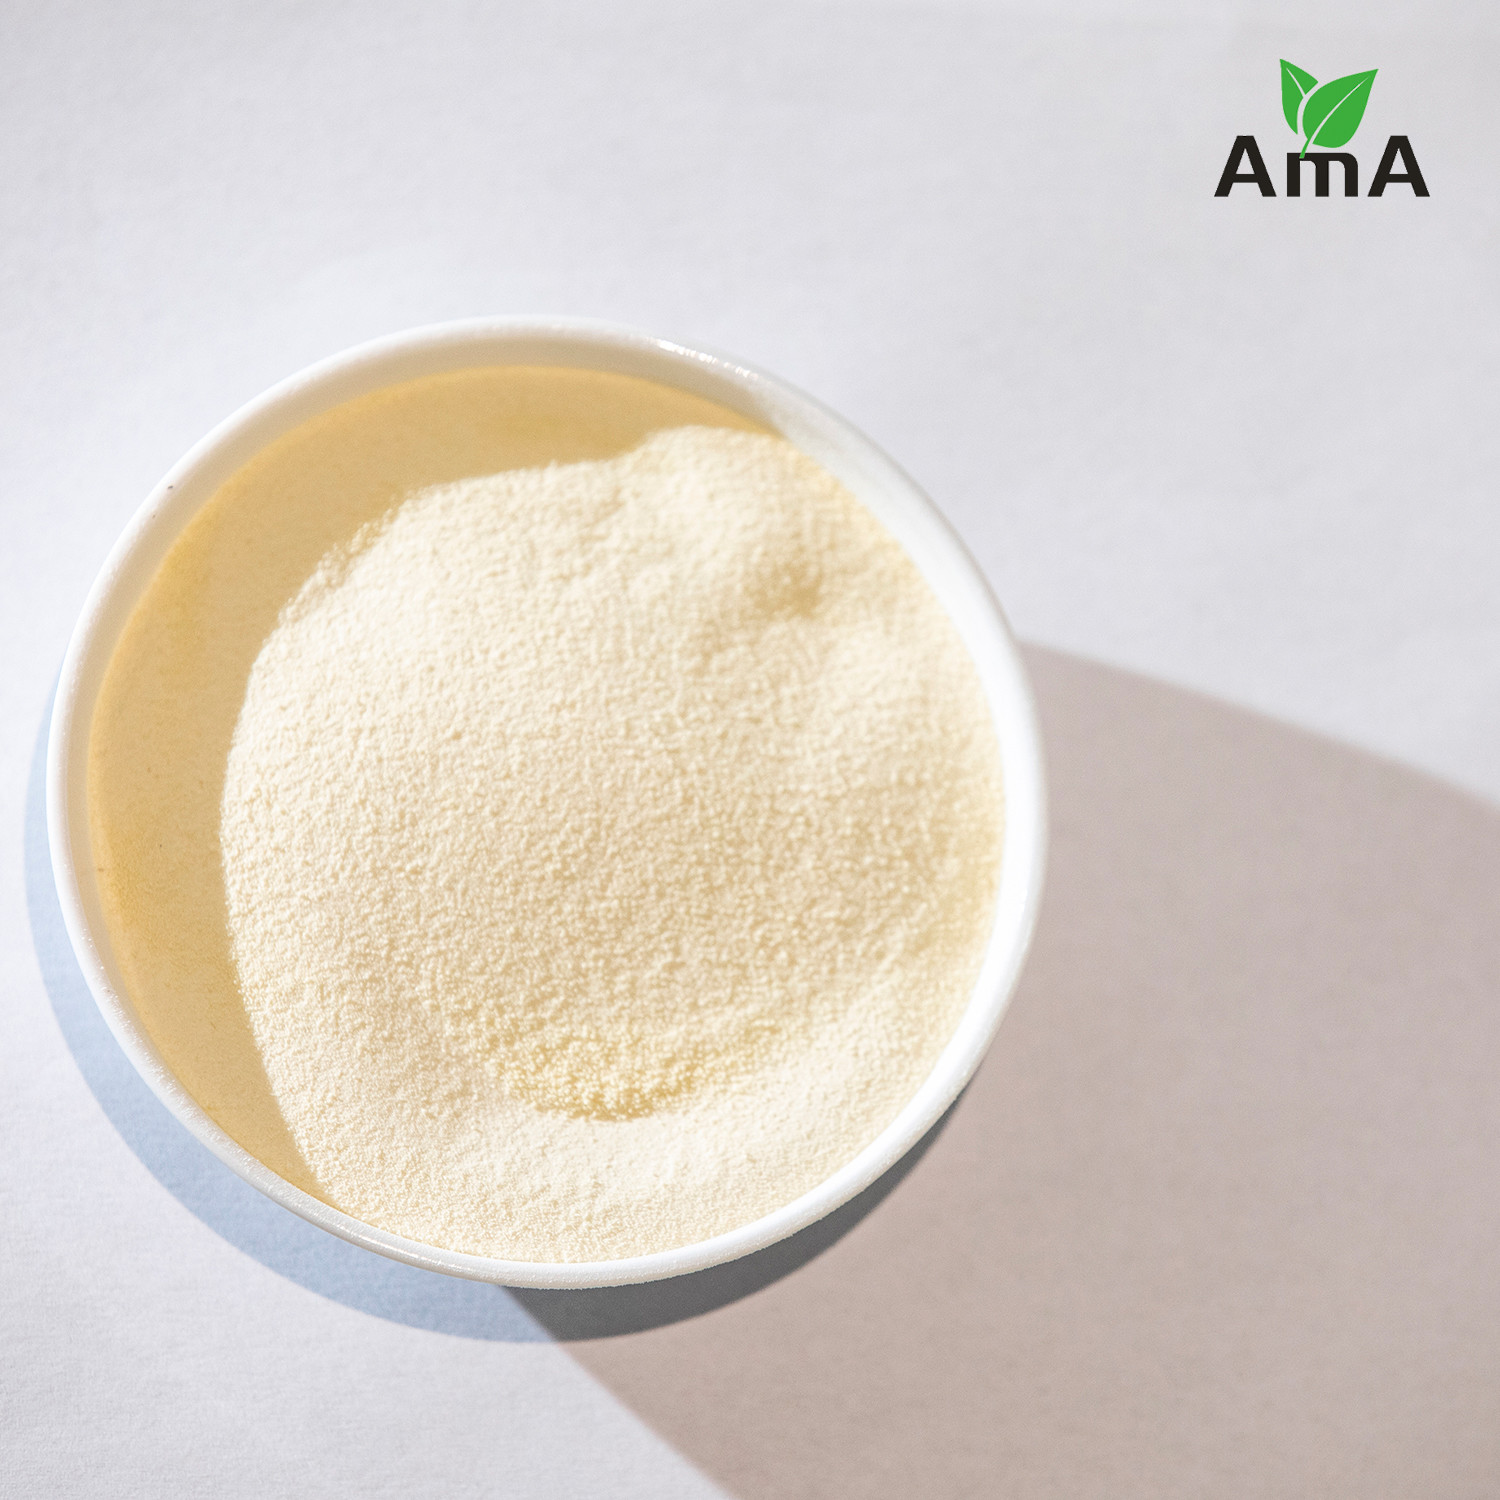 Quality OMRI List Hydrolyzed Protein Organic Nitrogen Fertilizer Amino Acid 14-0-0 80% Powder wholesale